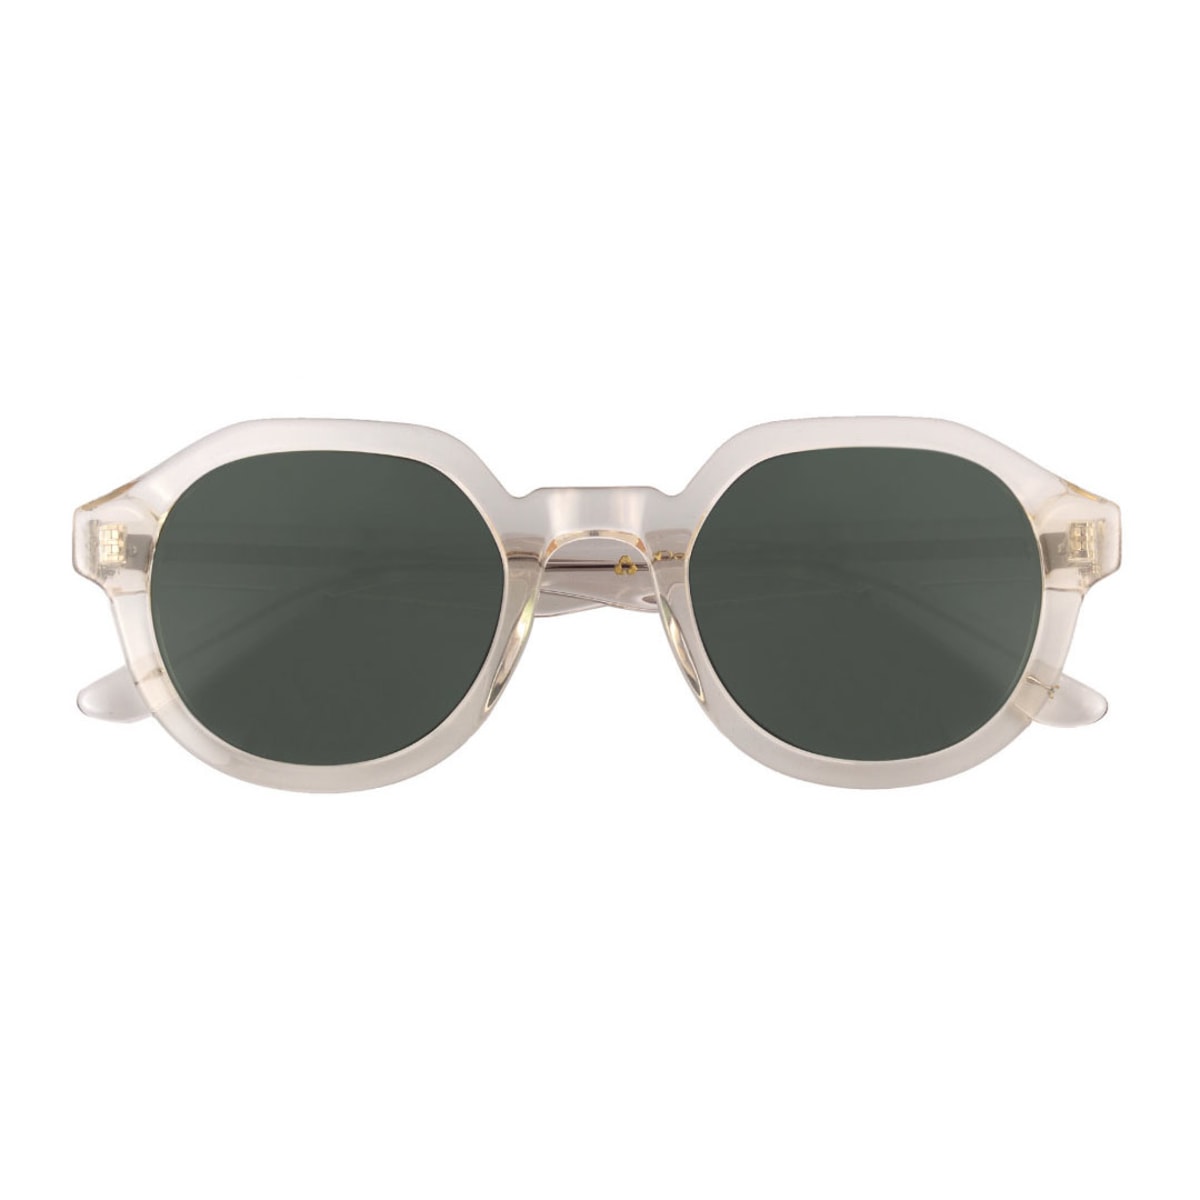 Palermo Sunglasses in grey